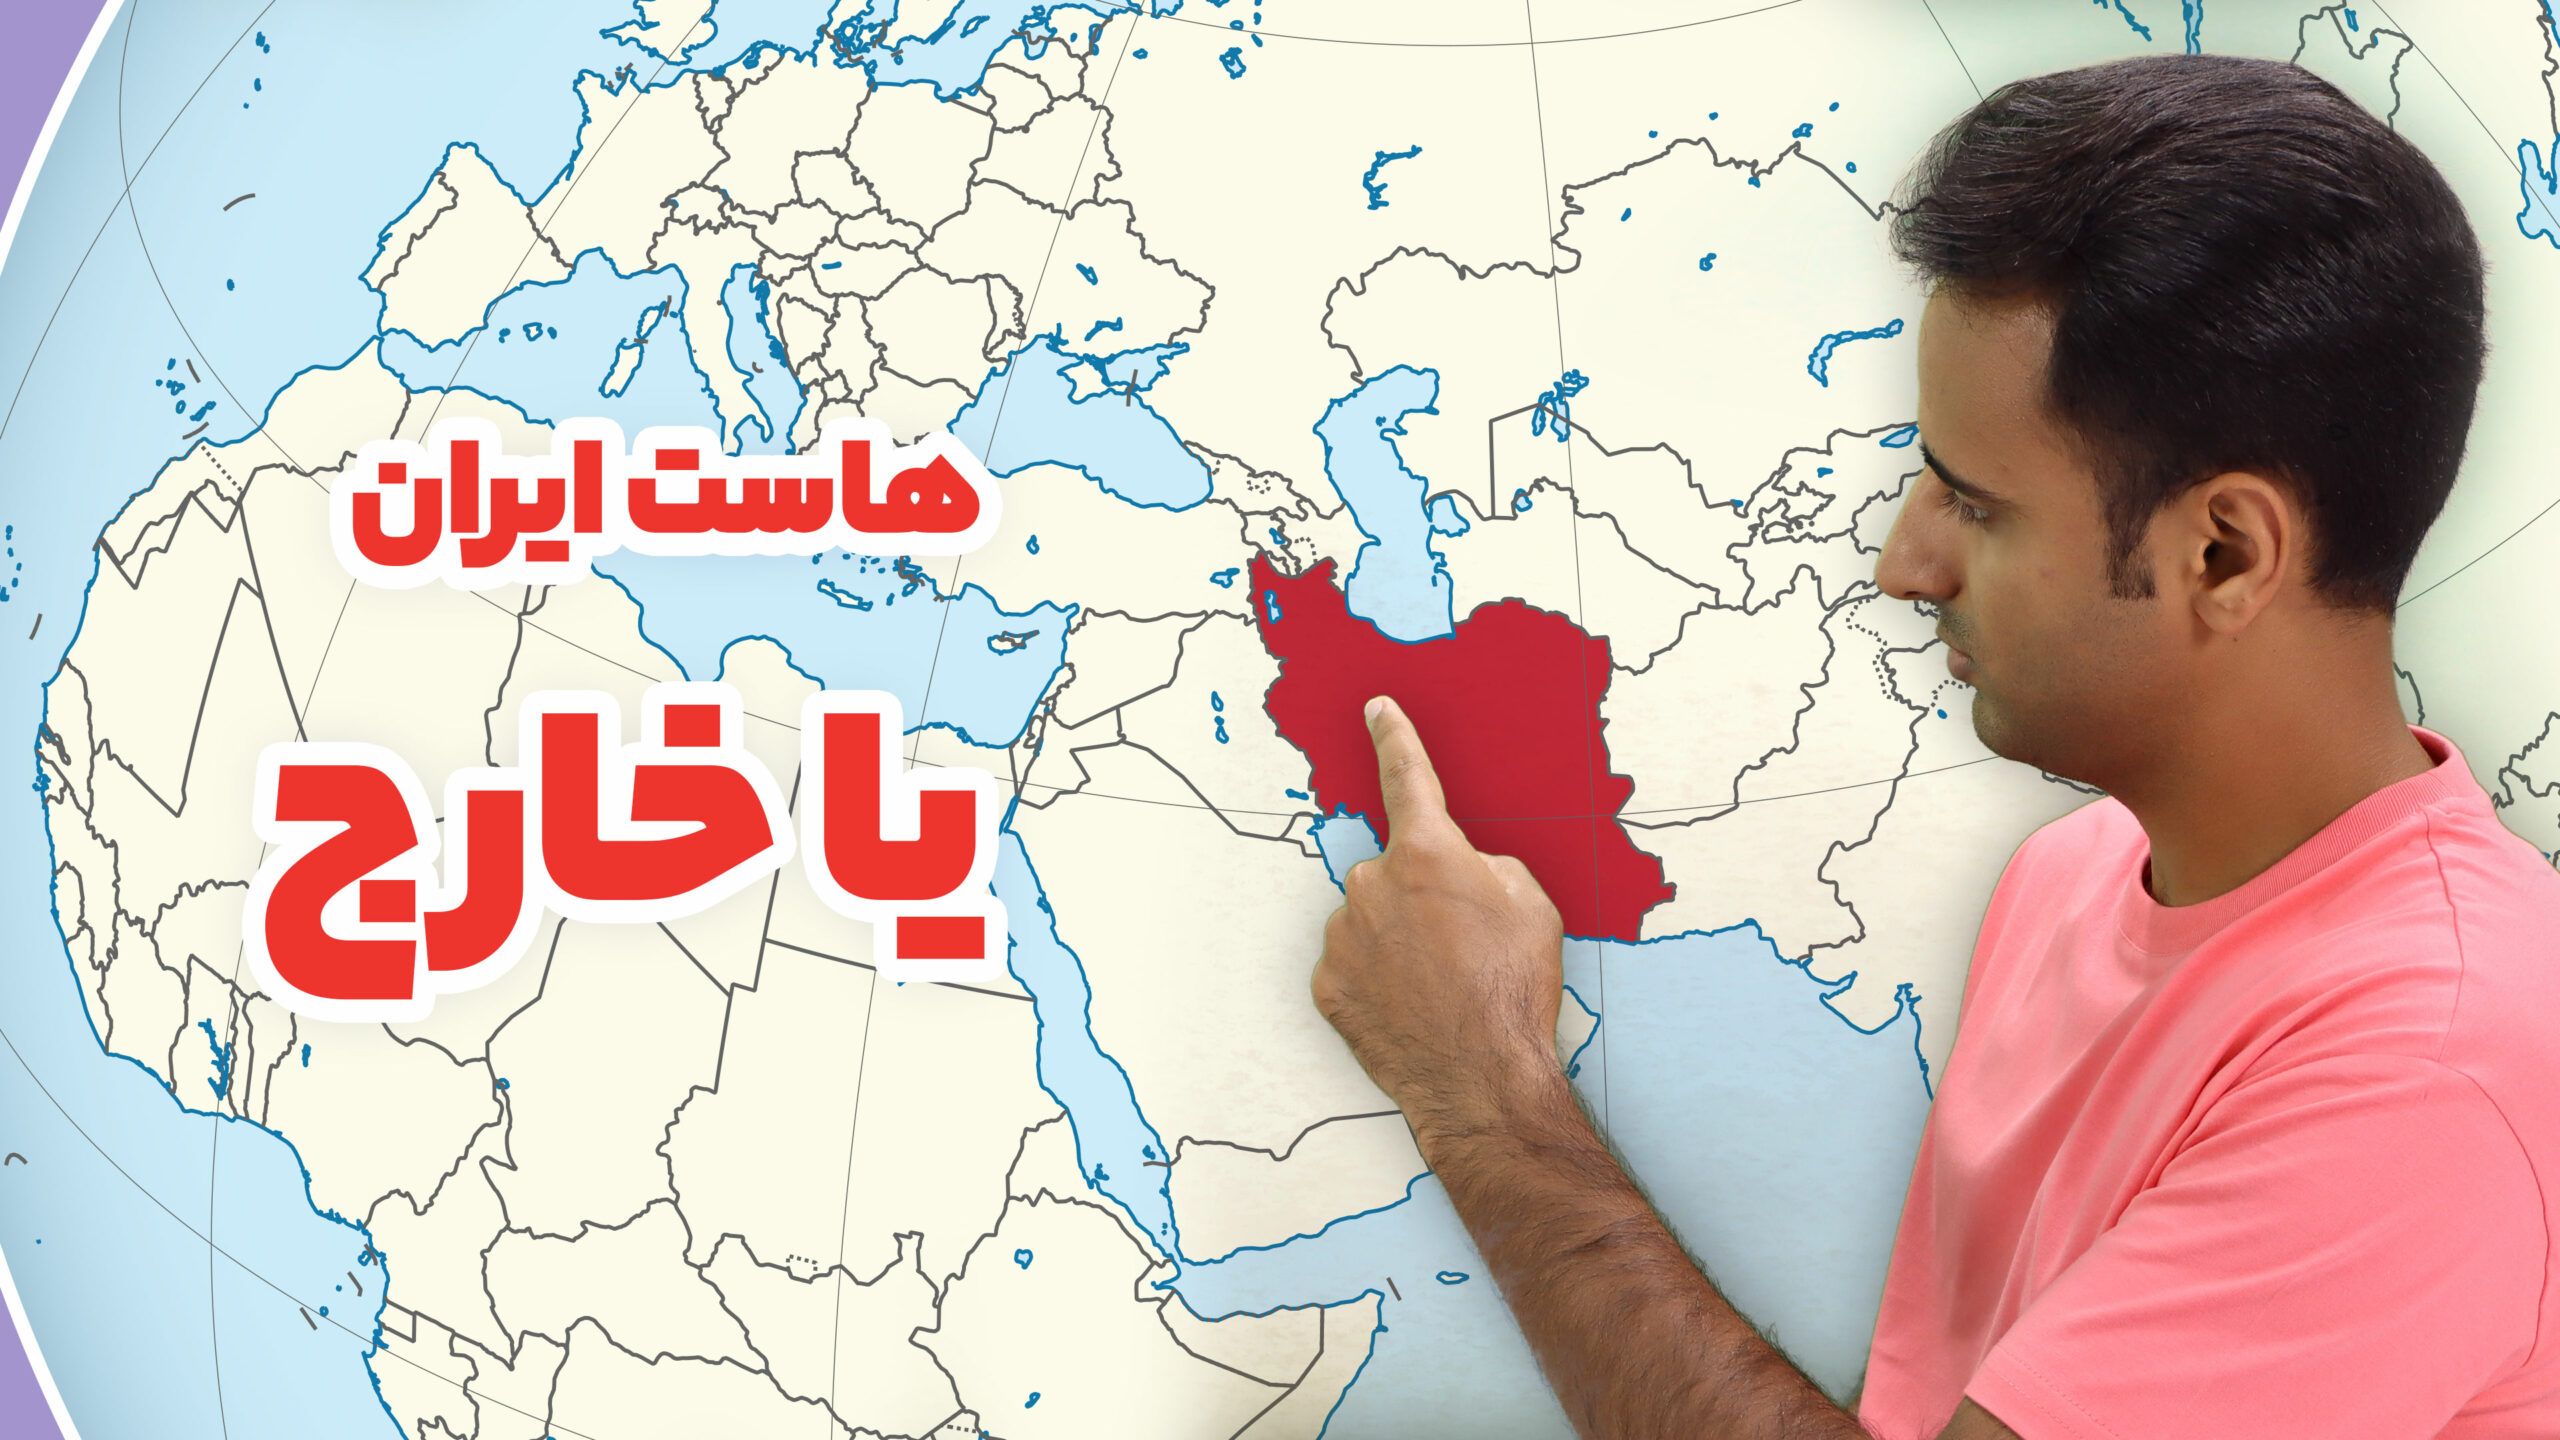 هاست ایران بهتر است یا خارج؟ کدام یک برای سئو بهتر است